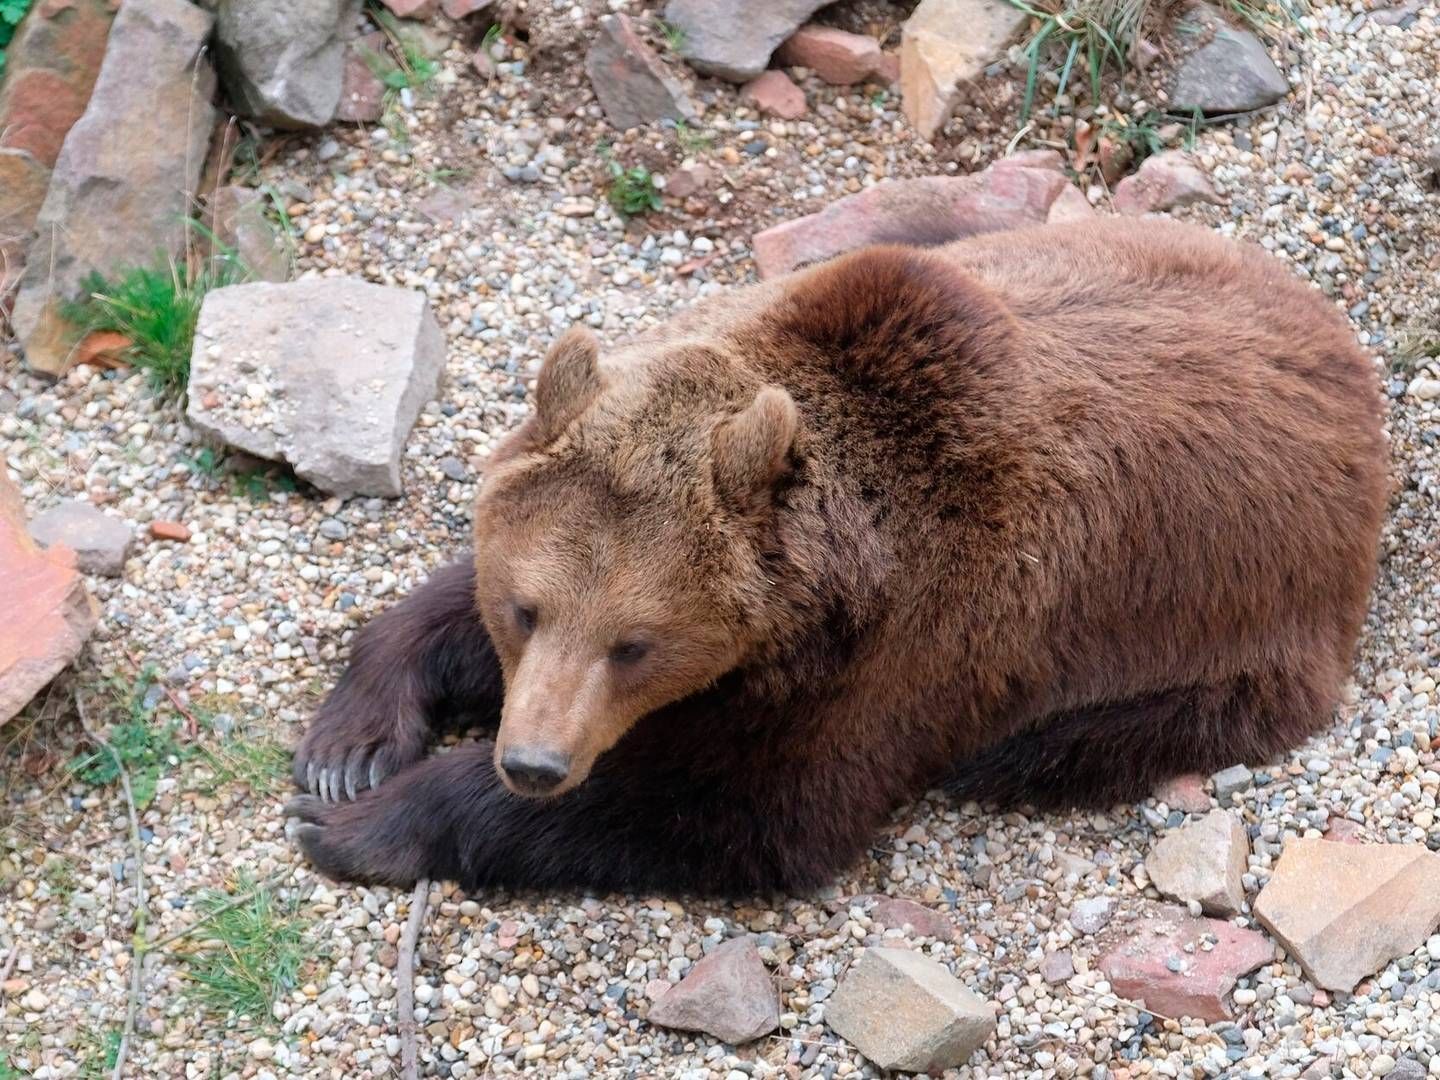 Ifølge Aarhus Universitet har alle bjørne været bedøvet i forbindelse med undersøgelserne, som har været godkendt af de dyreetiske myndigheder. | Foto: Sebastian Willnow/AP/Ritzau Scanpix